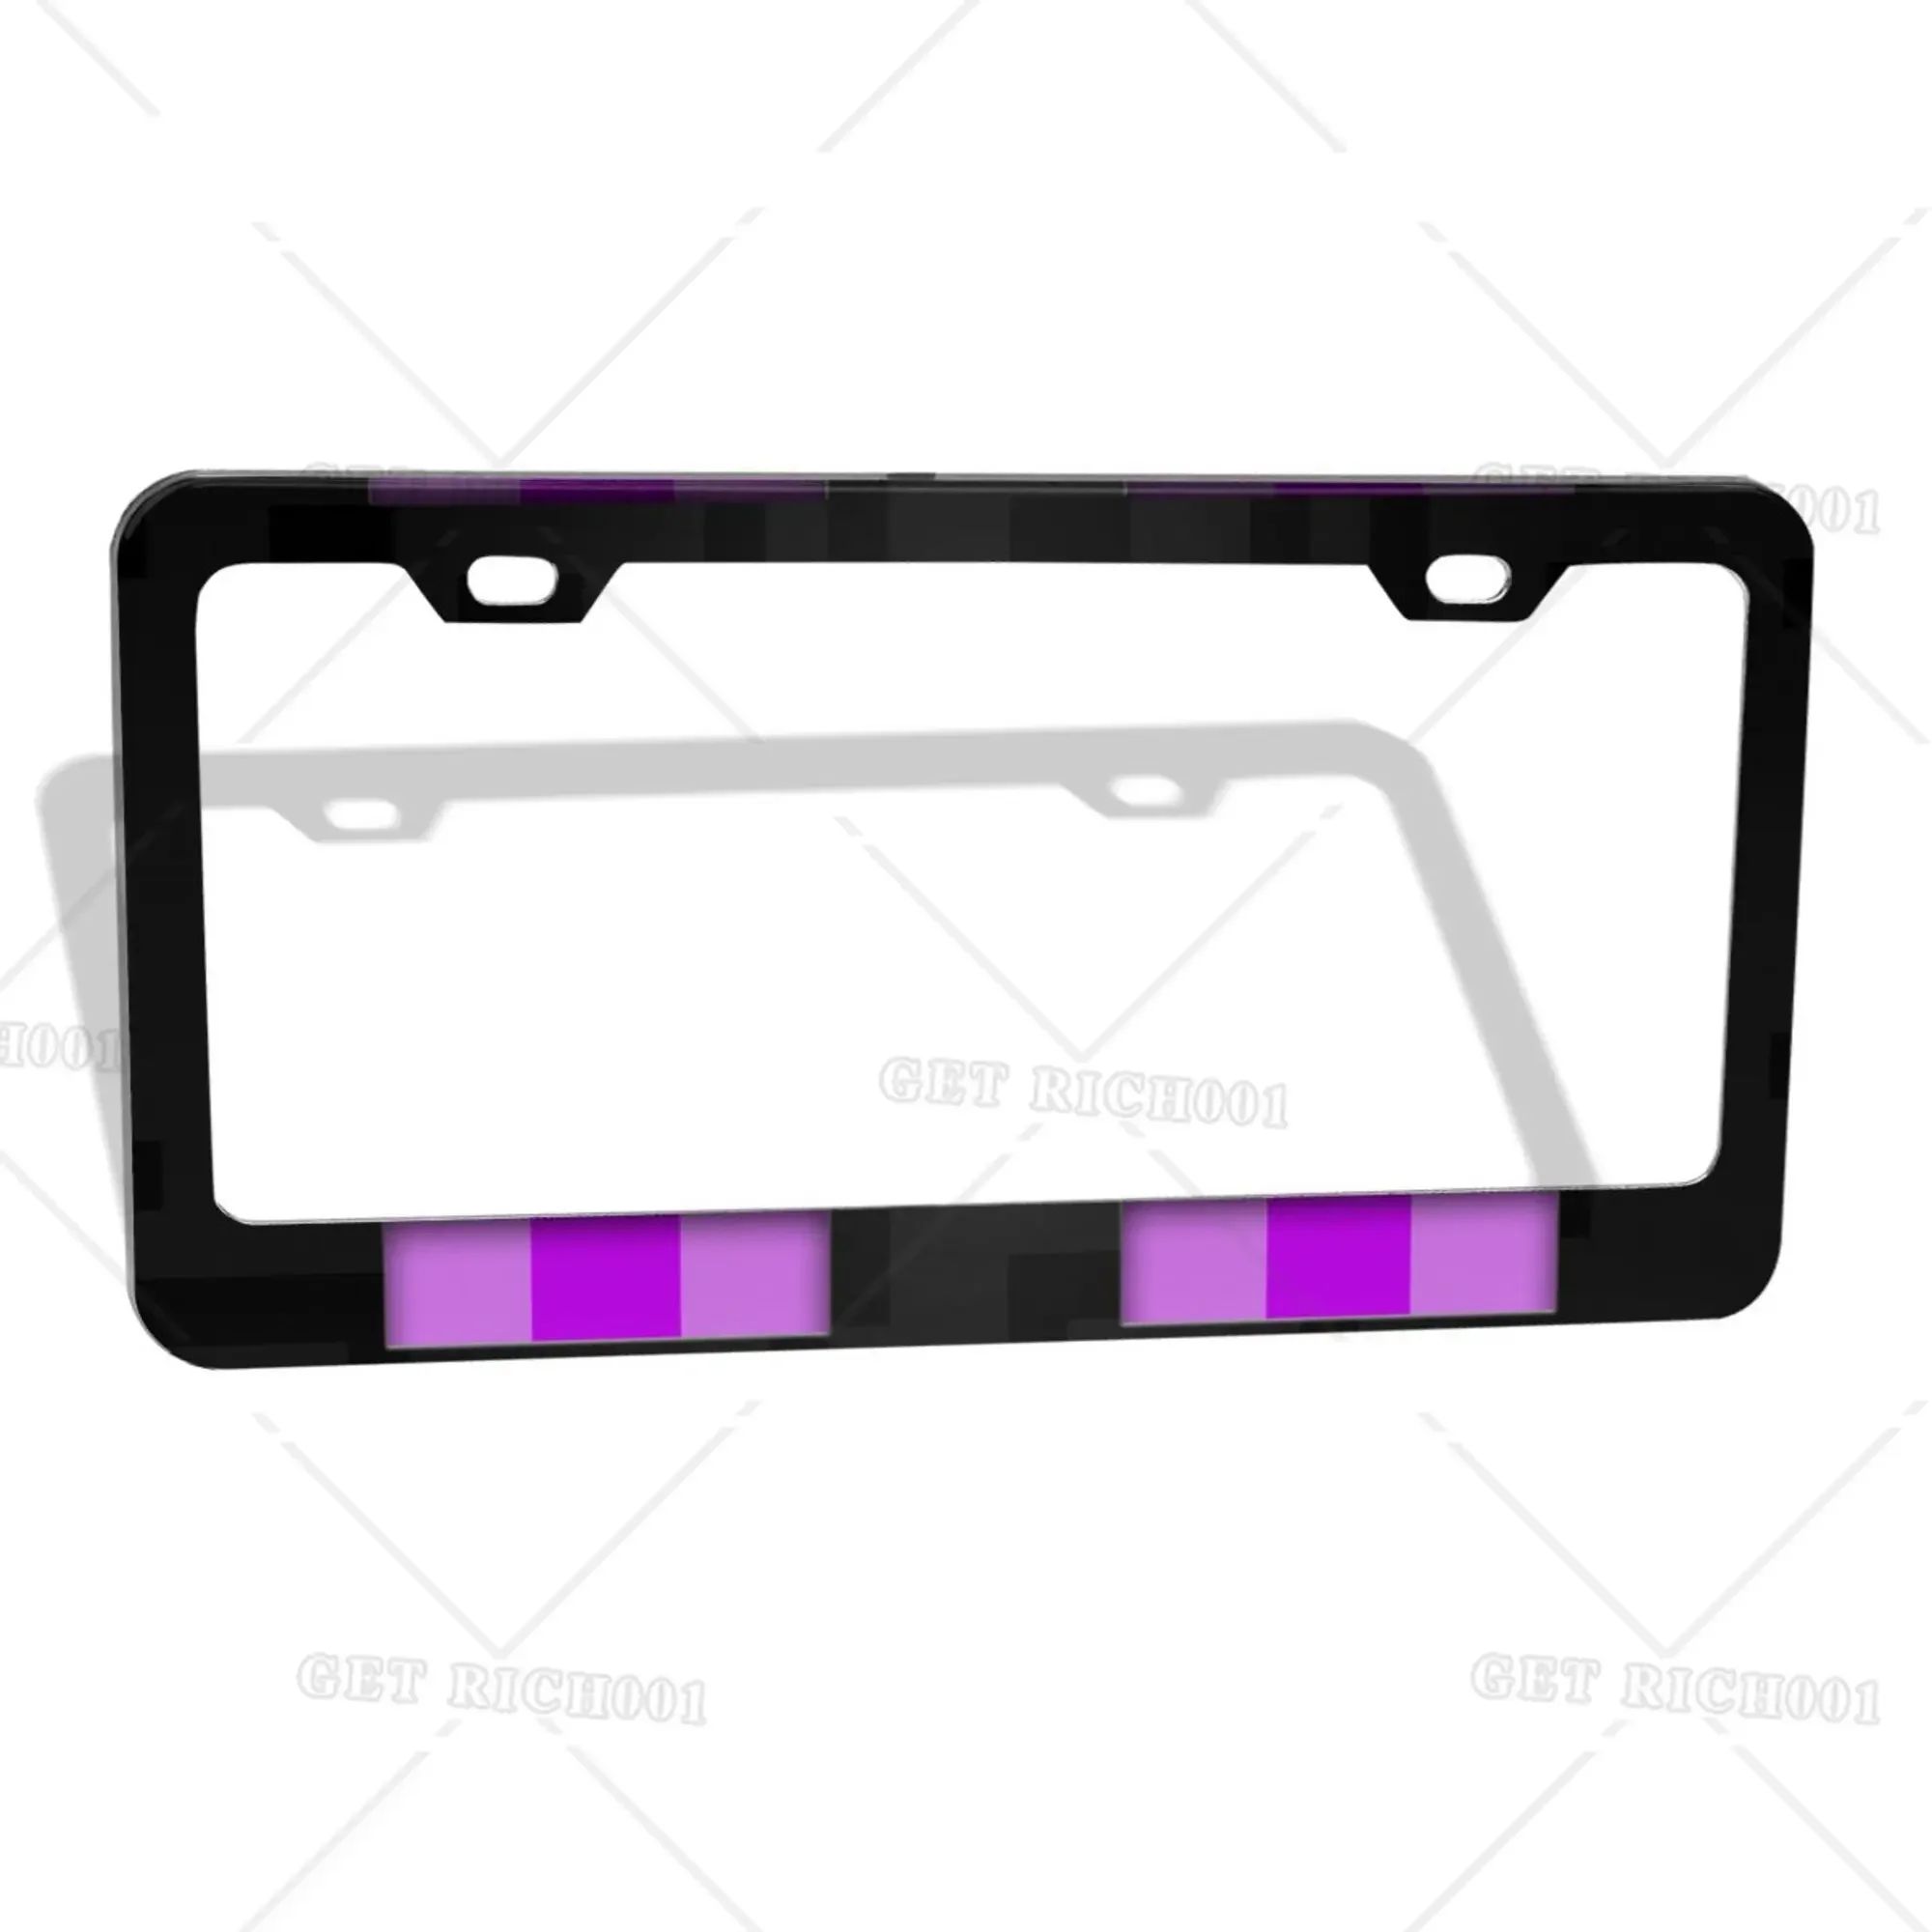 

Pixel Game Black Car License Plate Frame for Men Women Licence Plate Holder Car 12x6 Inch Registration Plate Holder Print